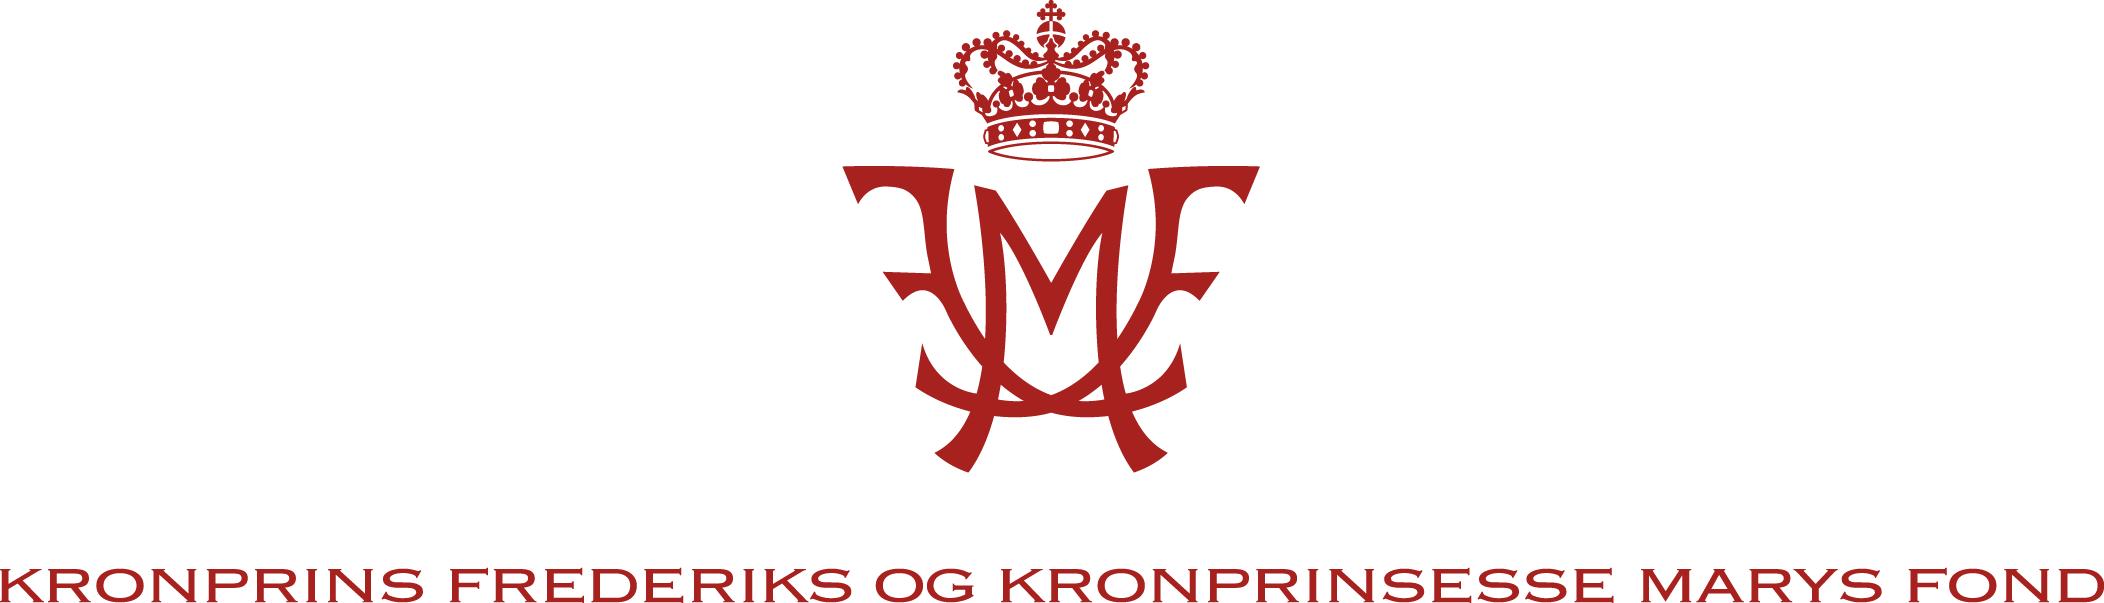 Kronprins Frederik og Kronprinsesse Marys fonds logo